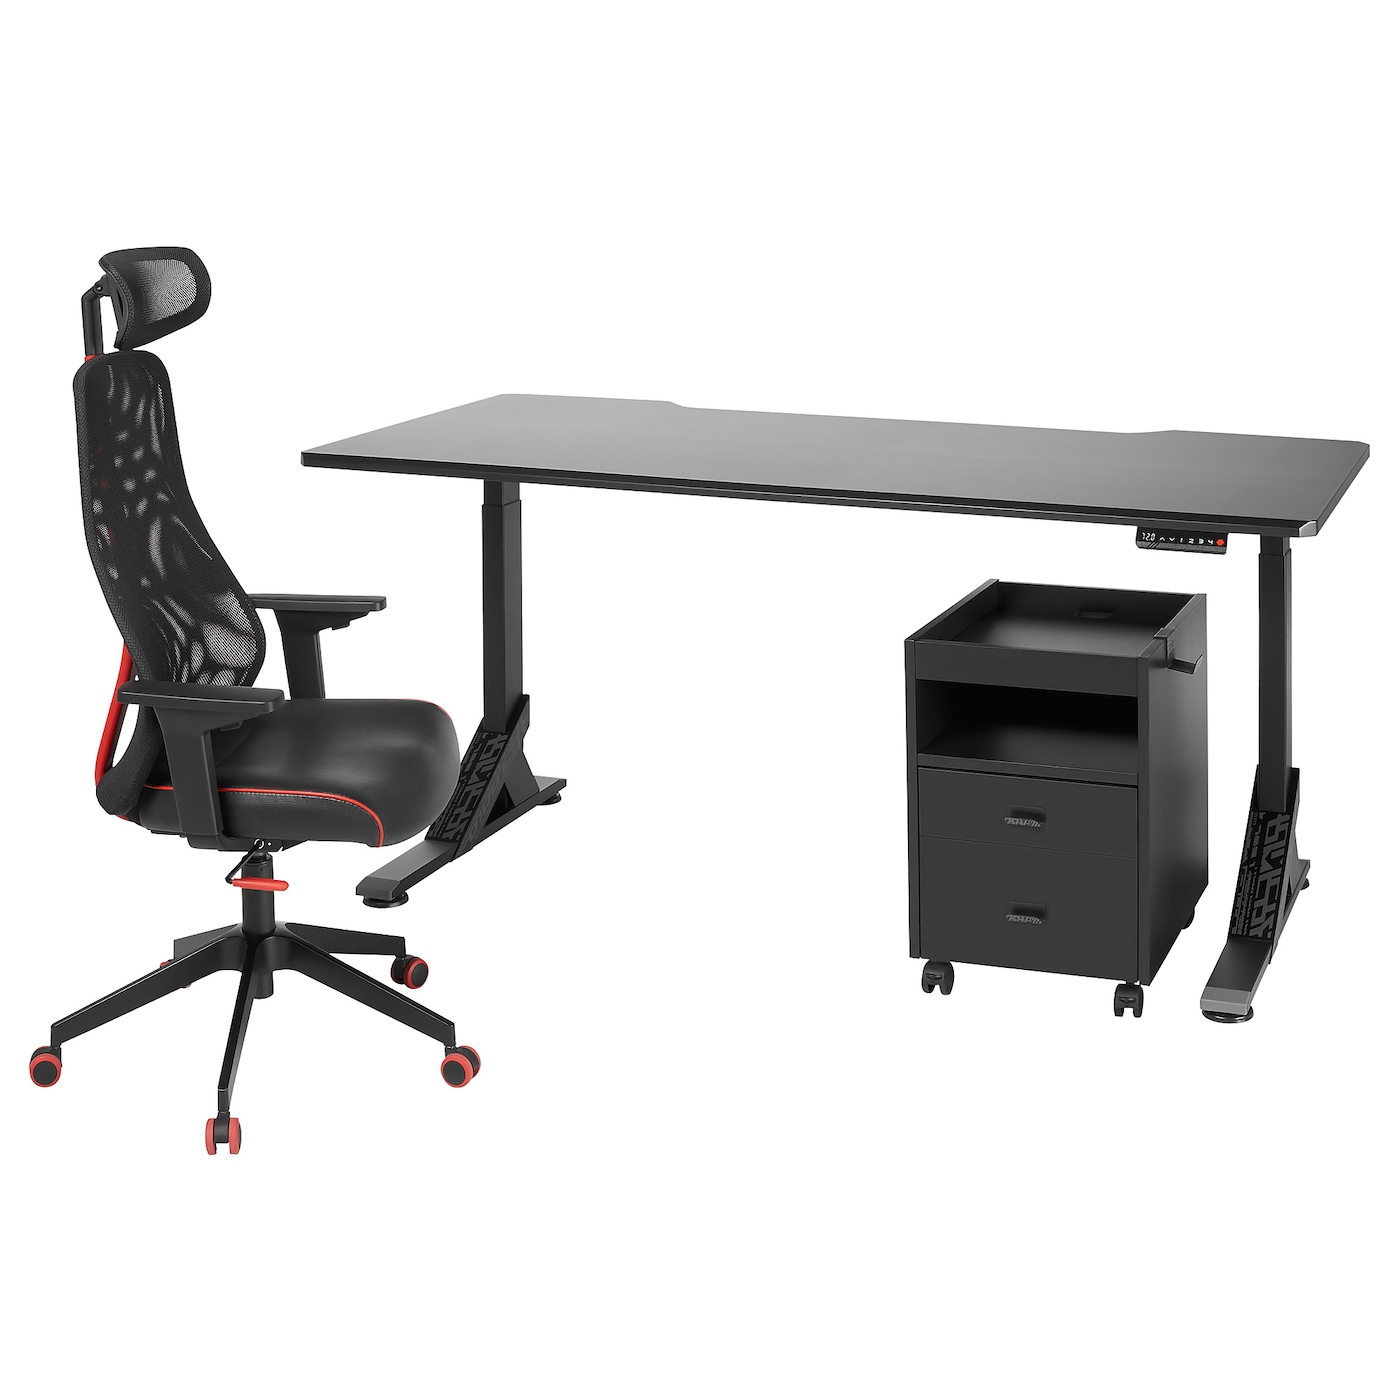 Игровой стол и стул с тумбой - IKEA UPPSPEL/MATCHSPEL, черный, 180х80х140-180 см, УППСПЕЛ/МАТЧСПЕЛ ИКЕА